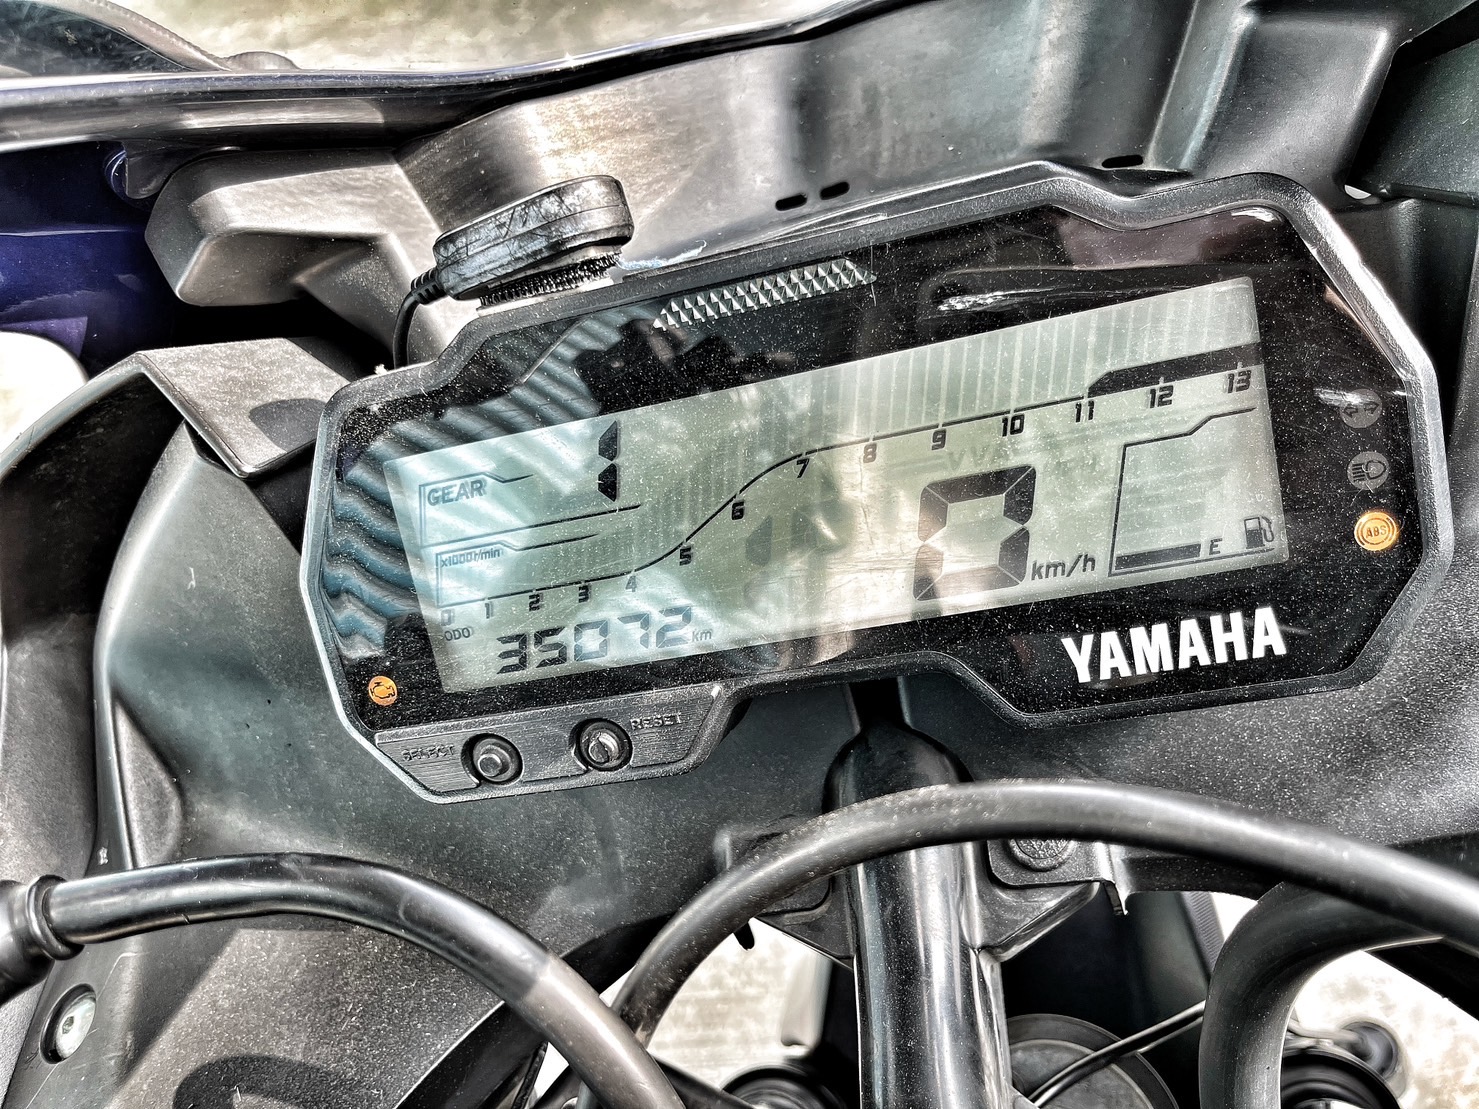 YAMAHA YZF-R15 - 中古/二手車出售中 行車記錄器 手機架 拉桿 基本改 無摔車無事故 小資族二手重機買賣 | 小資族二手重機買賣